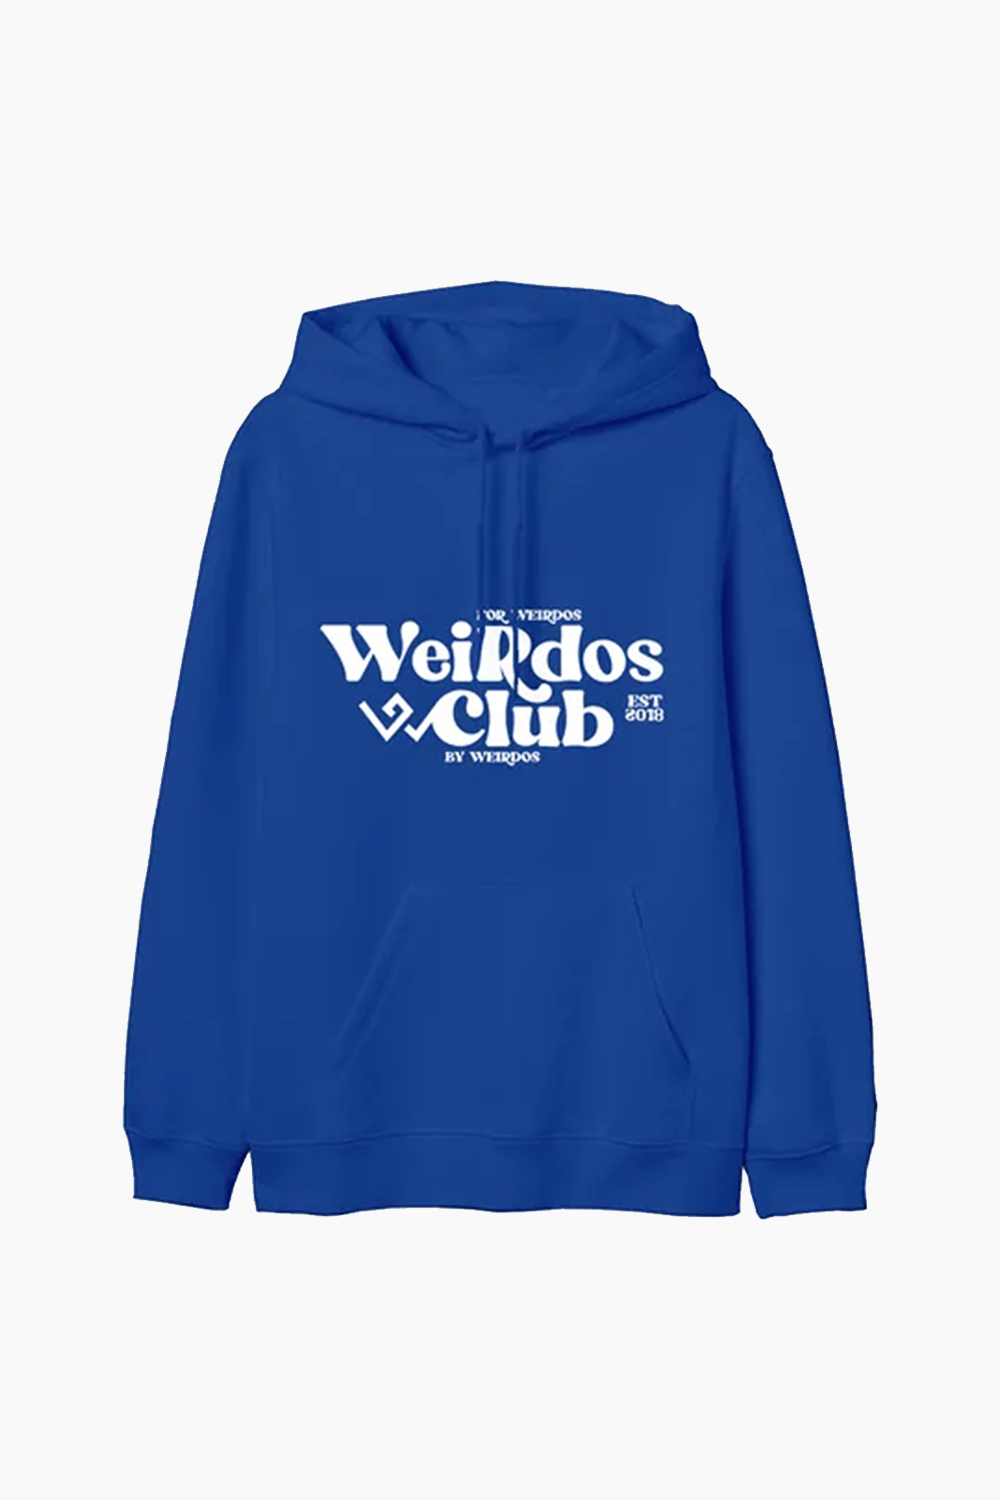 WCLUB hoodie